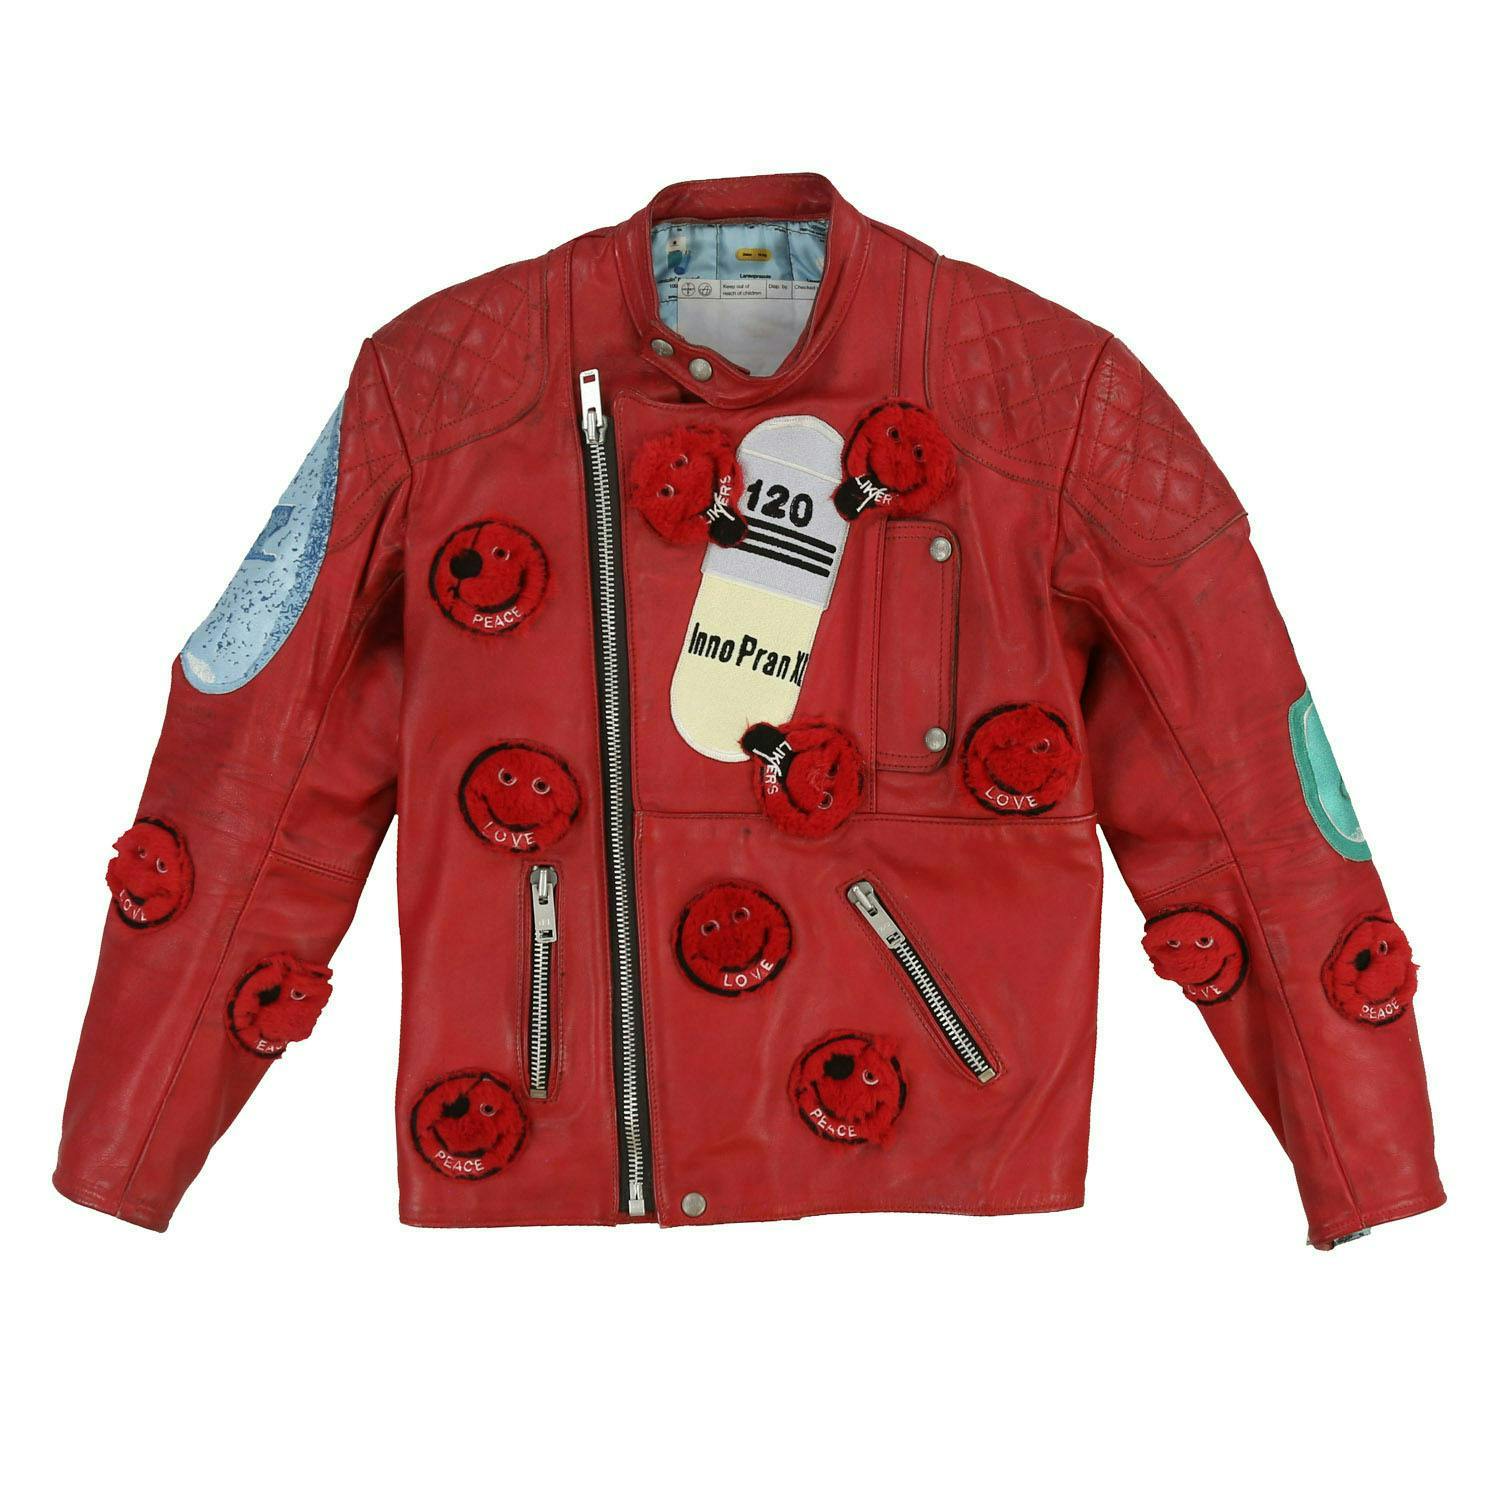 clothing apparel jacket coat leather jacket